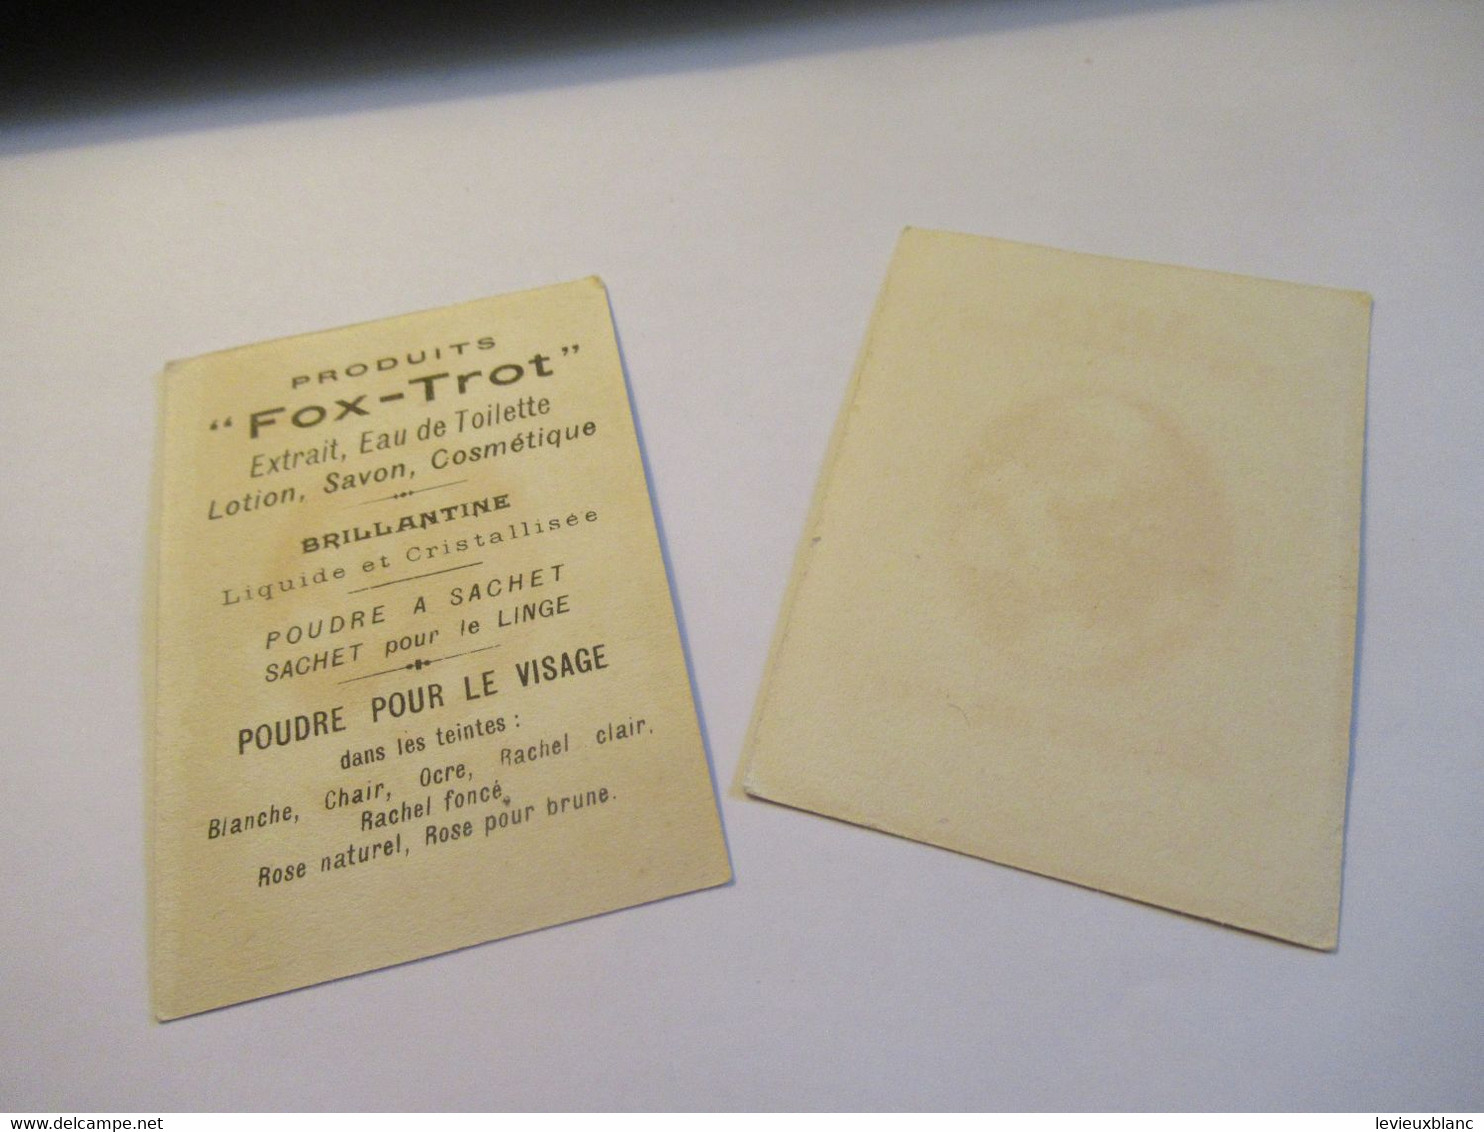 2 Petites Cartes Publicitaires Parfumées/ ARYS, 2 Rue De La Paix Paris/Fox-Trot/ Faisons Un Rêve/Vers 1920   PARF240 - Oud (tot 1960)